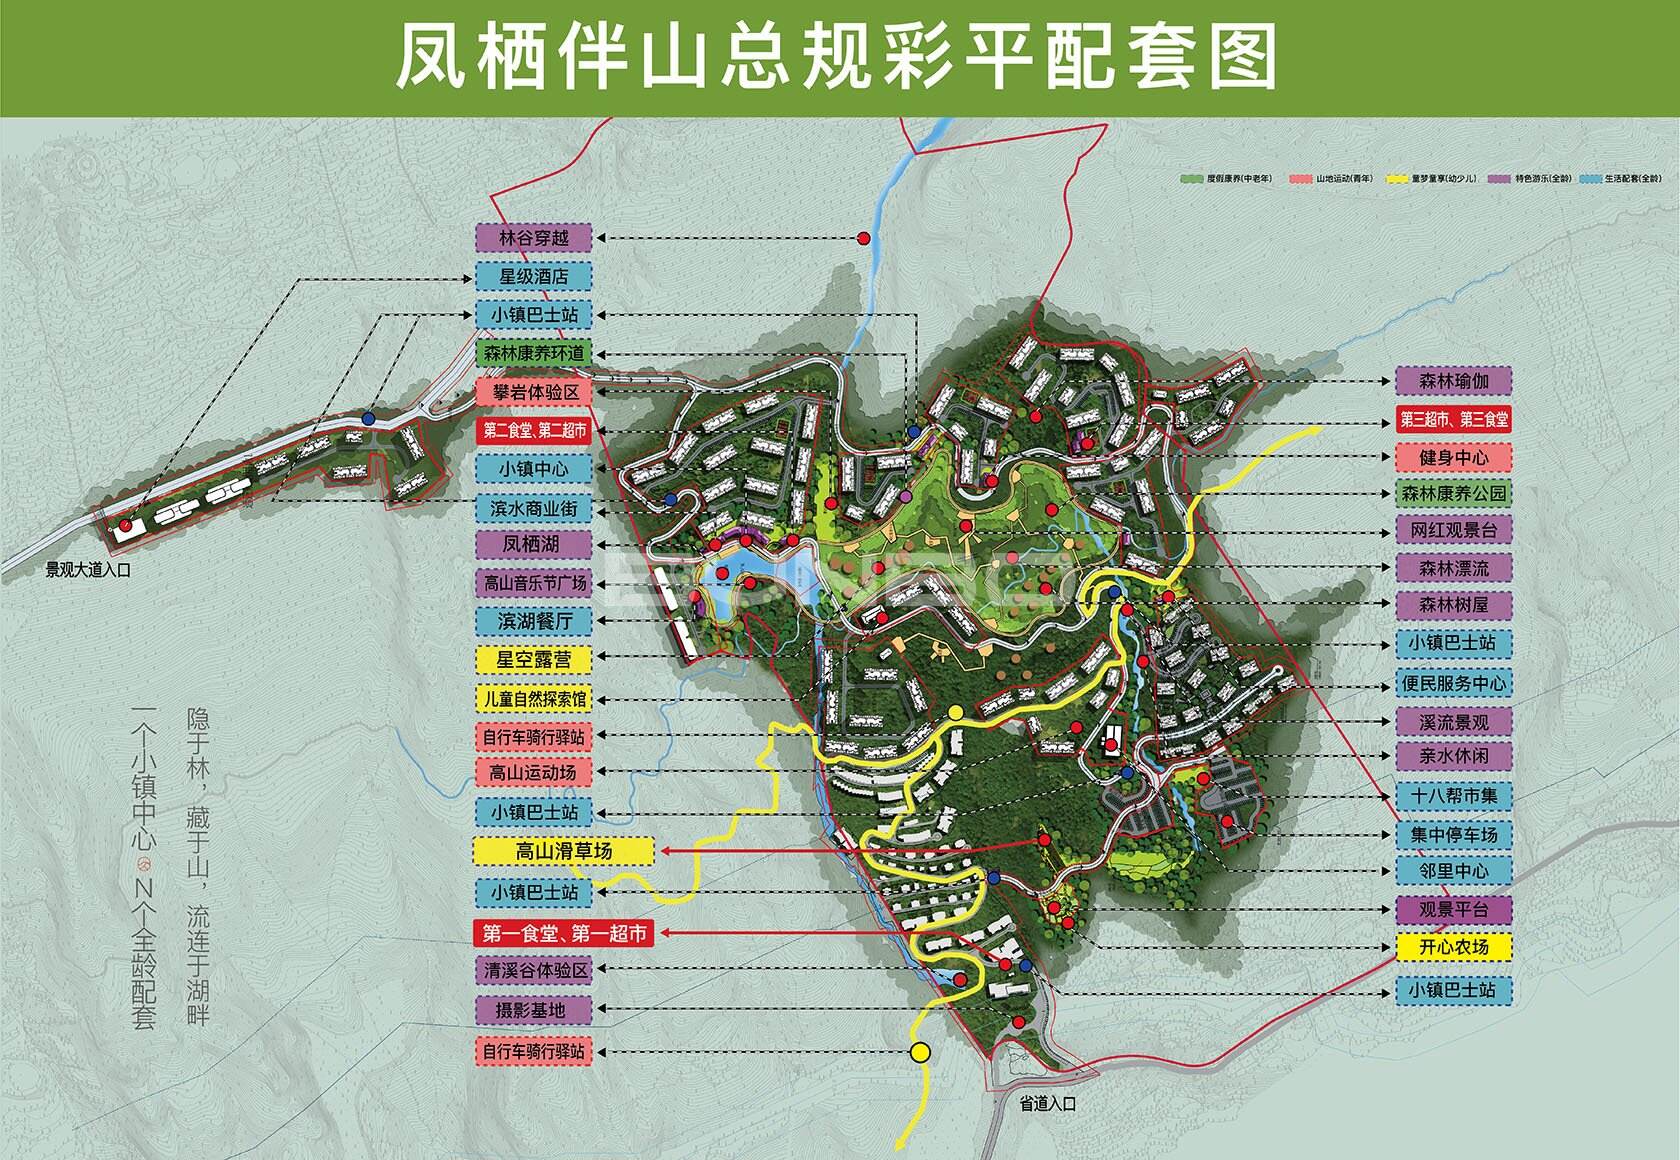 凤起伴山避暑度假小镇规划总平面图